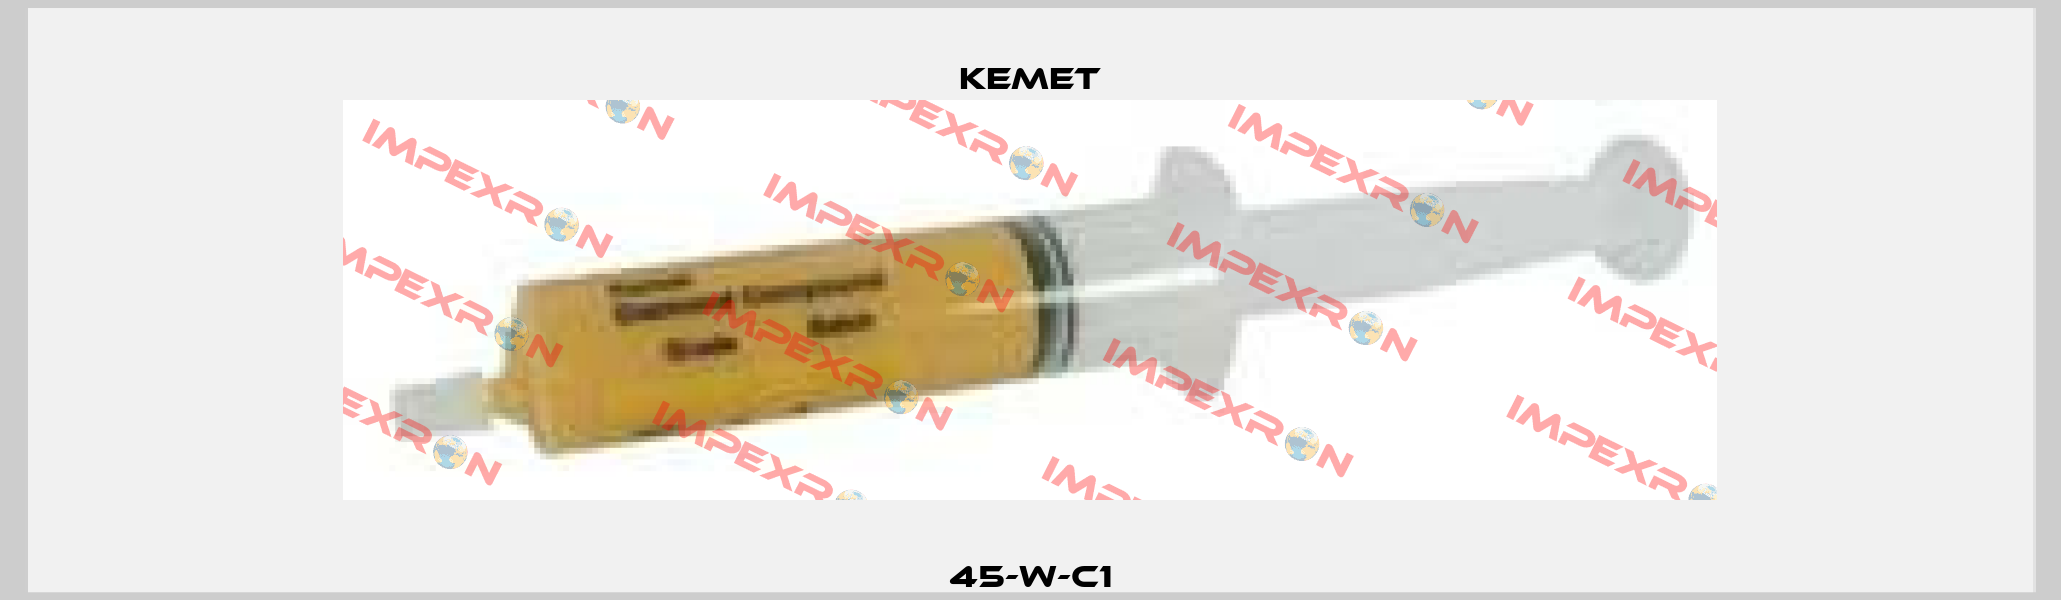 45-W-C1 Kemet